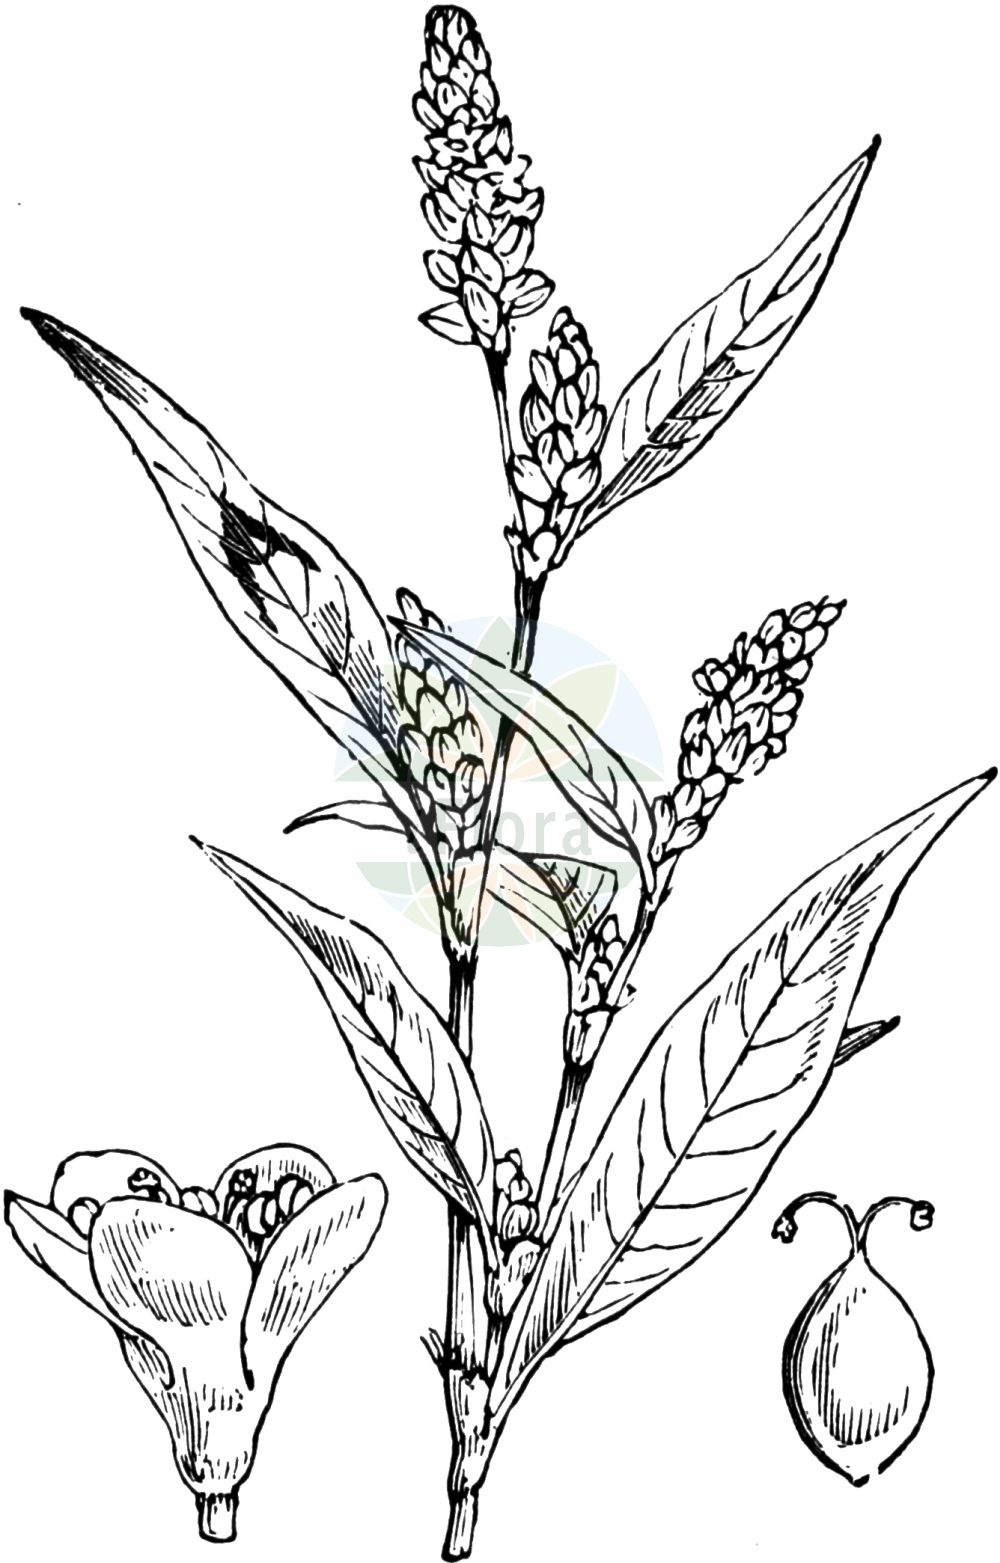 Historische Abbildung von Persicaria maculosa (Floh-Knöterich - Redshank). Das Bild zeigt Blatt, Bluete, Frucht und Same. ---- Historical Drawing of Persicaria maculosa (Floh-Knöterich - Redshank). The image is showing leaf, flower, fruit and seed.(Persicaria maculosa,Floh-Knöterich,Redshank,Persicaria maculosa,Persicaria ruderalis,Persicaria vulgaris,Polygonum biforme,Polygonum persicaria,Polygonum ruderale,Floh-Knoeterich,Redshank,Ladysthumb,Spotted Ladysthumb,Persicaria,Small Water-pepper,Red-leg,Persicaria,Knöterich,Knotgrass,Polygonaceae,Knöterichgewächse,Knotgrass family,Blatt,Bluete,Frucht,Same,leaf,flower,fruit,seed,Fitch et al. (1880))